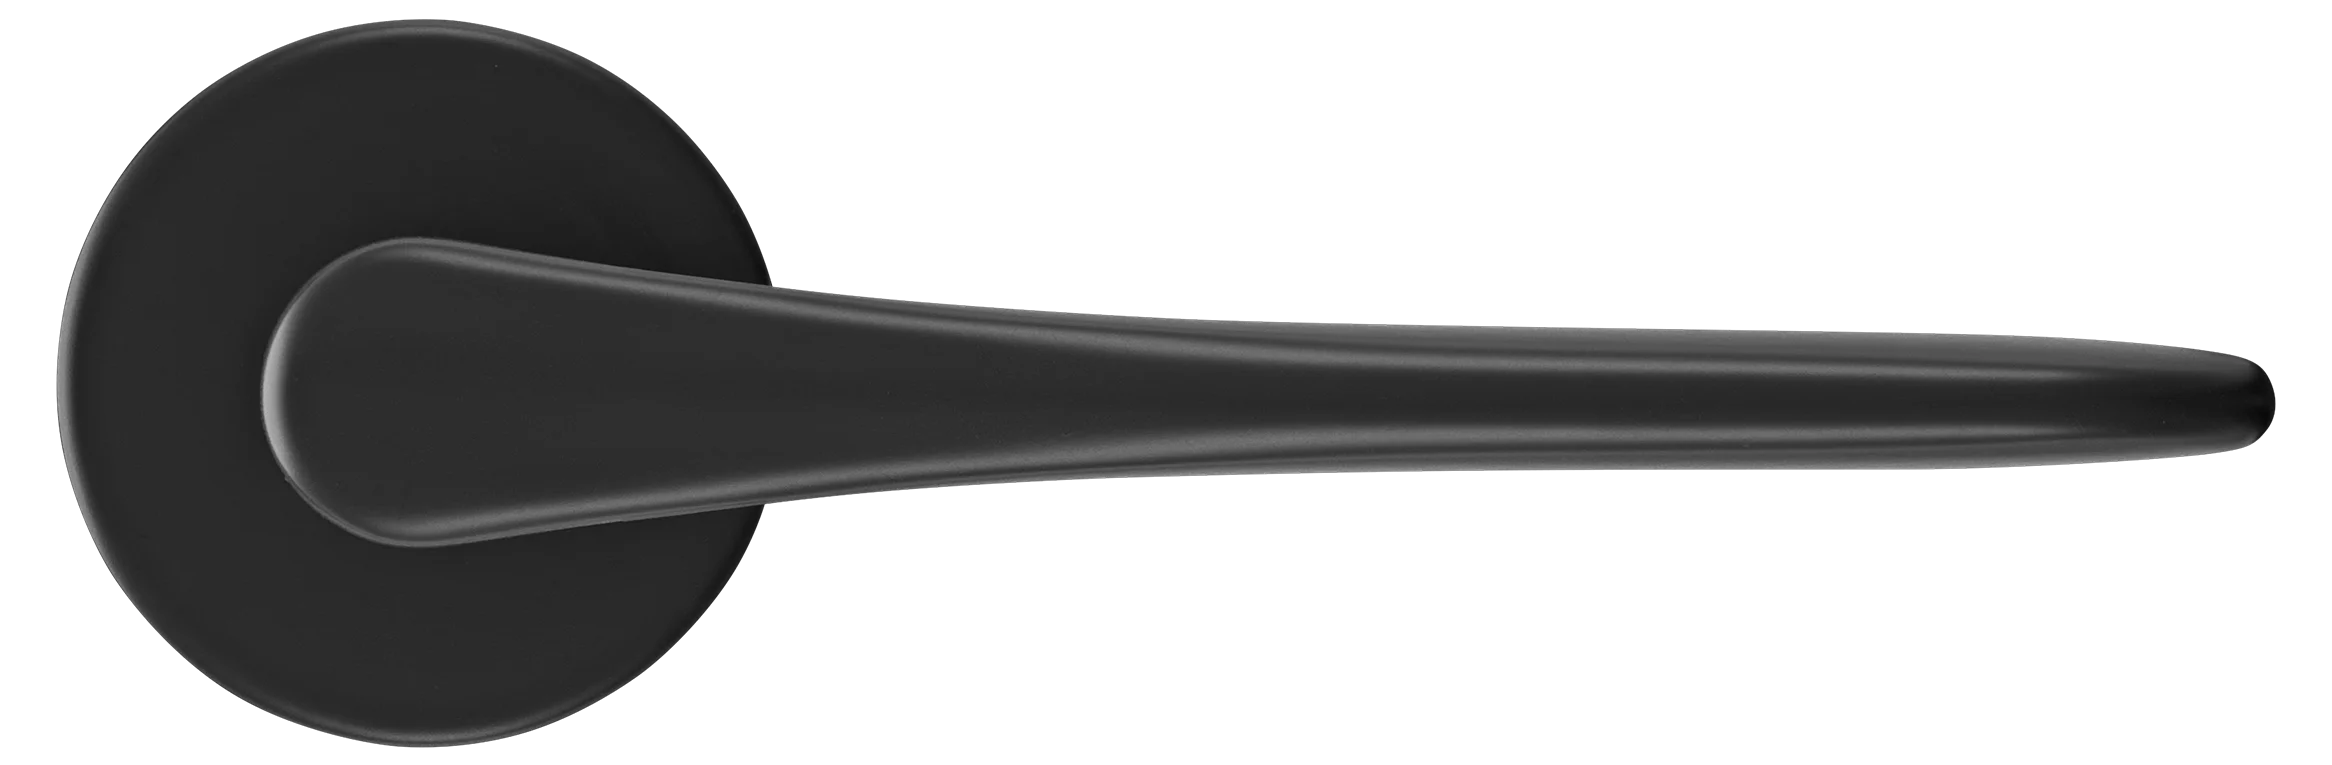 AULA R5 NERO, ручка дверная на розетке 7мм, цвет -  черный фото купить в Омске